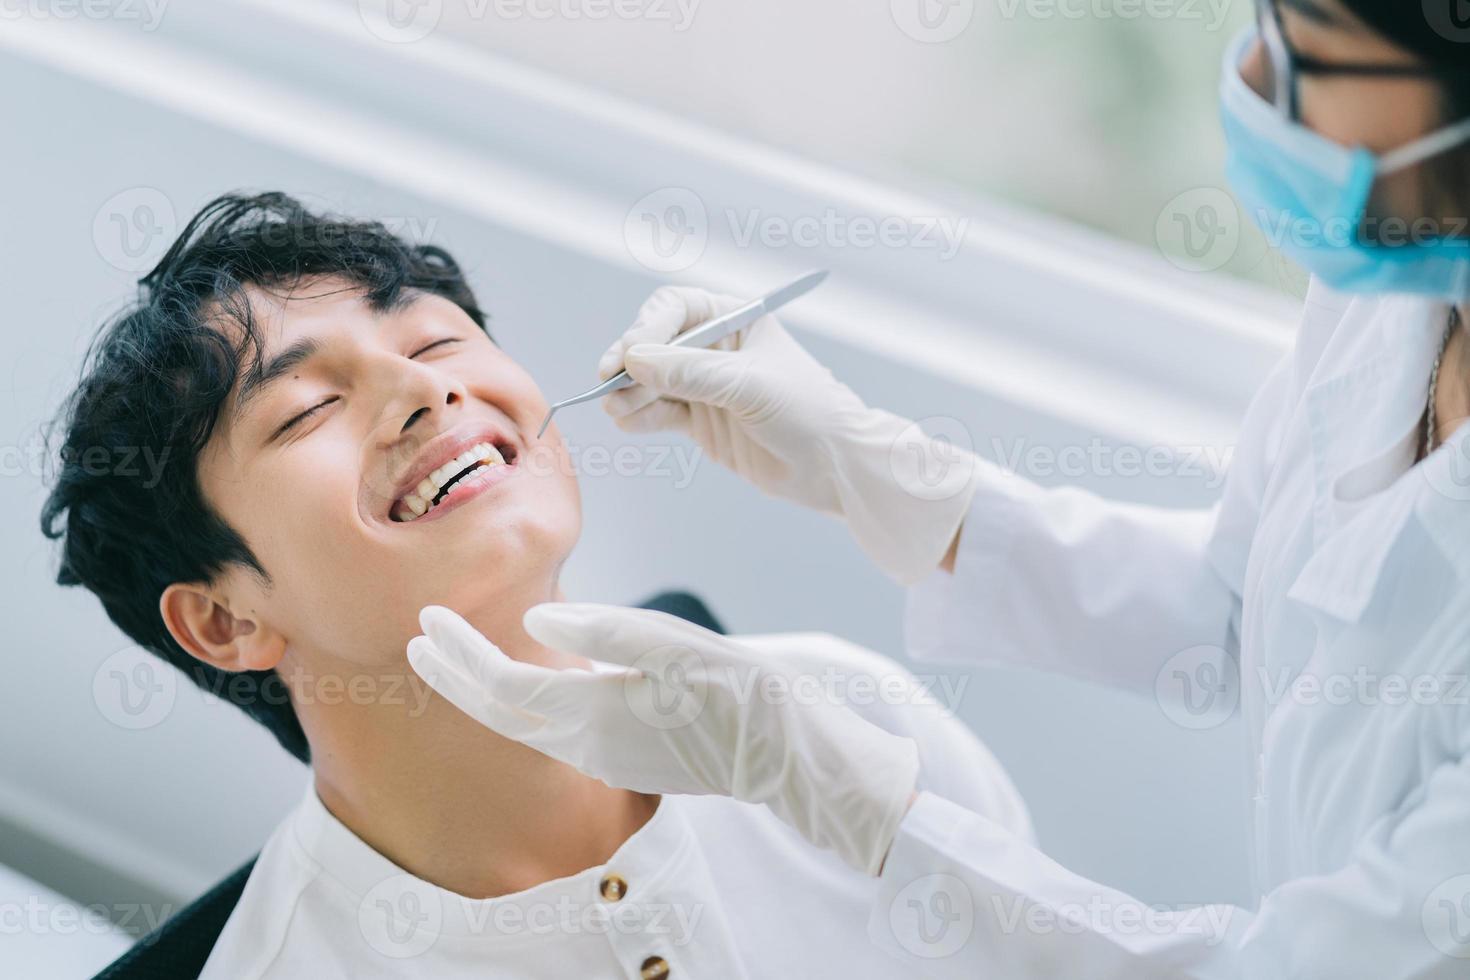 Doctora asiática revisando los dientes de un paciente foto